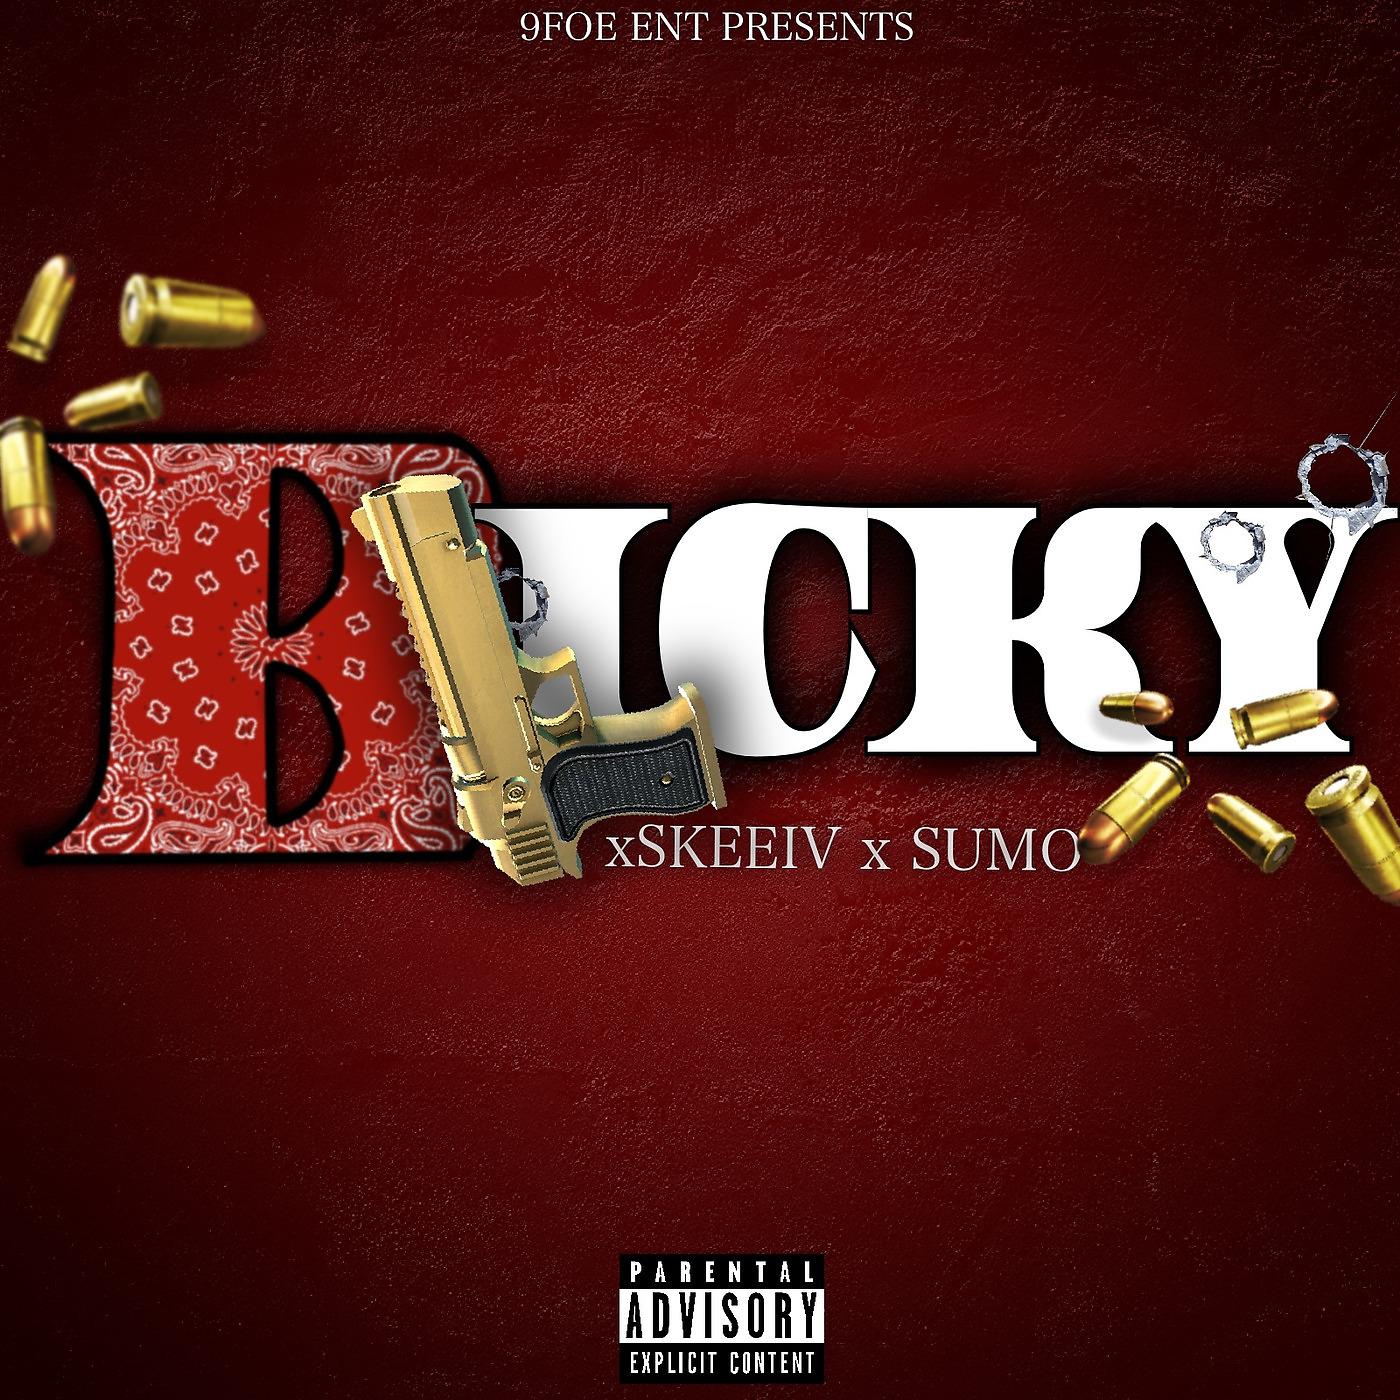 Постер альбома Blicky